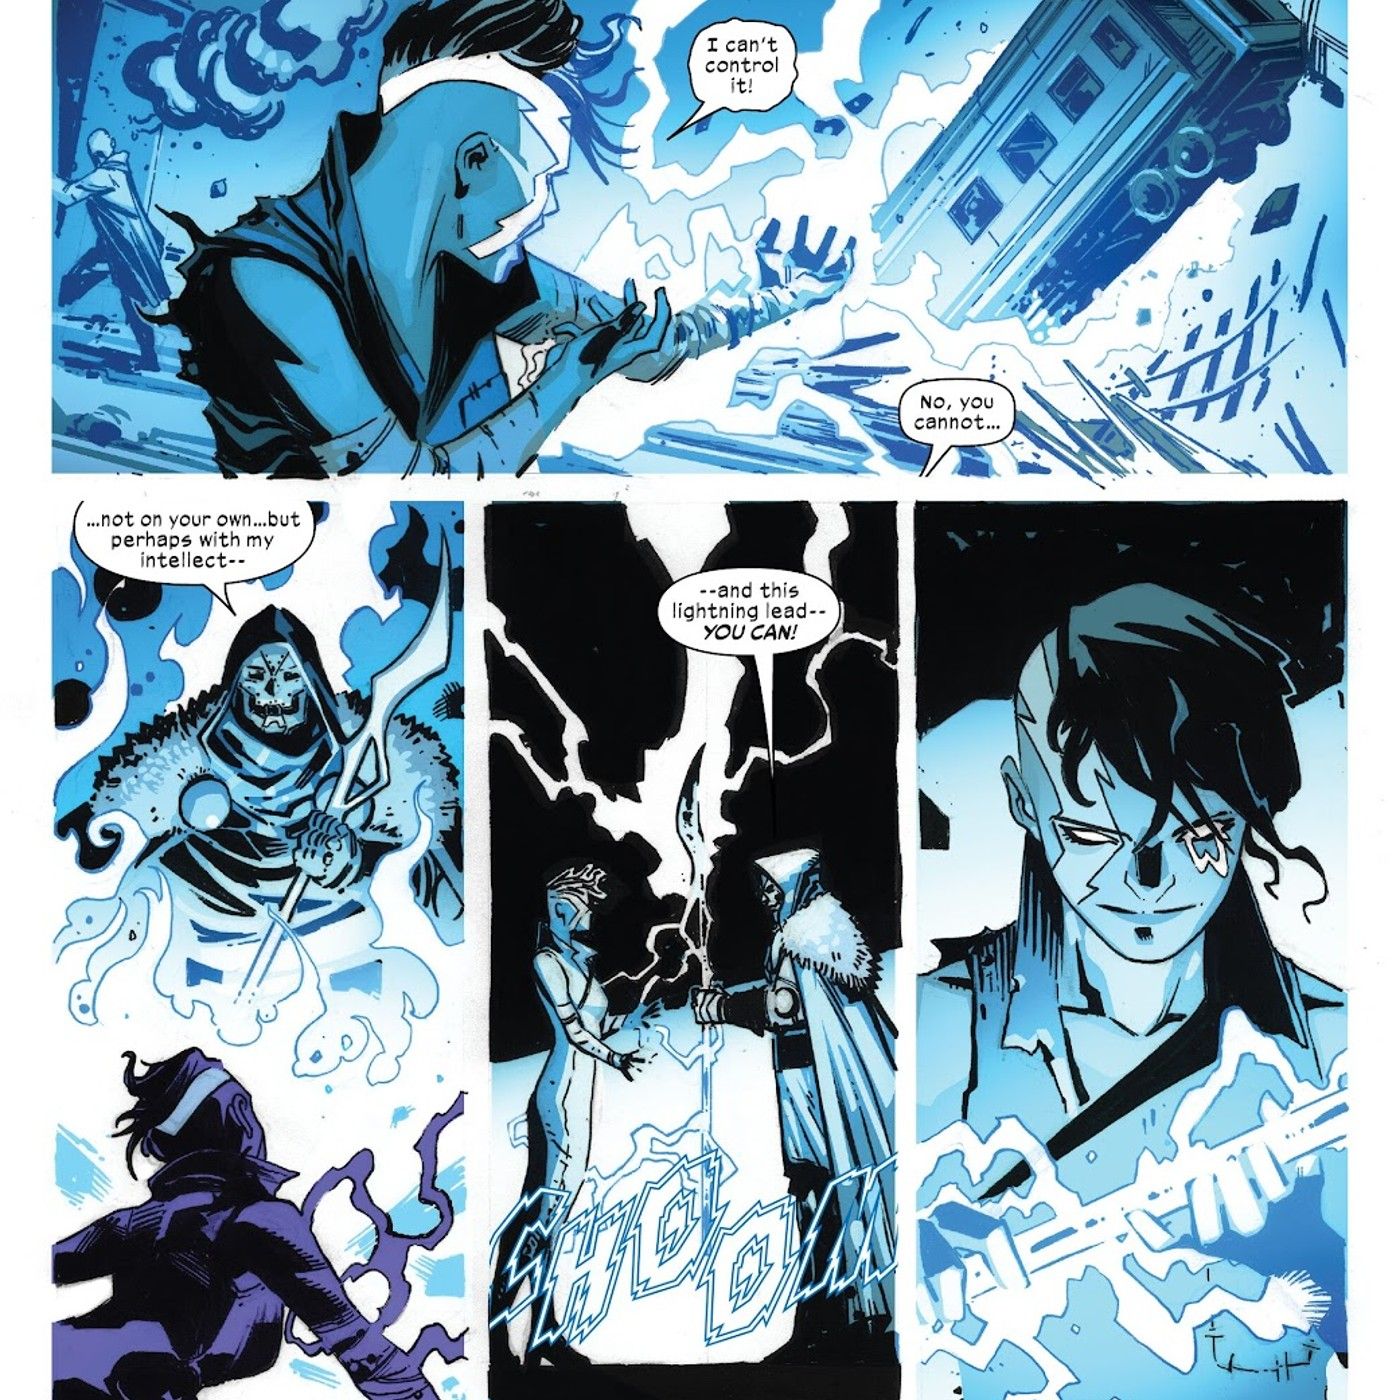 panels from X-Men #29, Doctor Doom recruits Volta for his X-Men